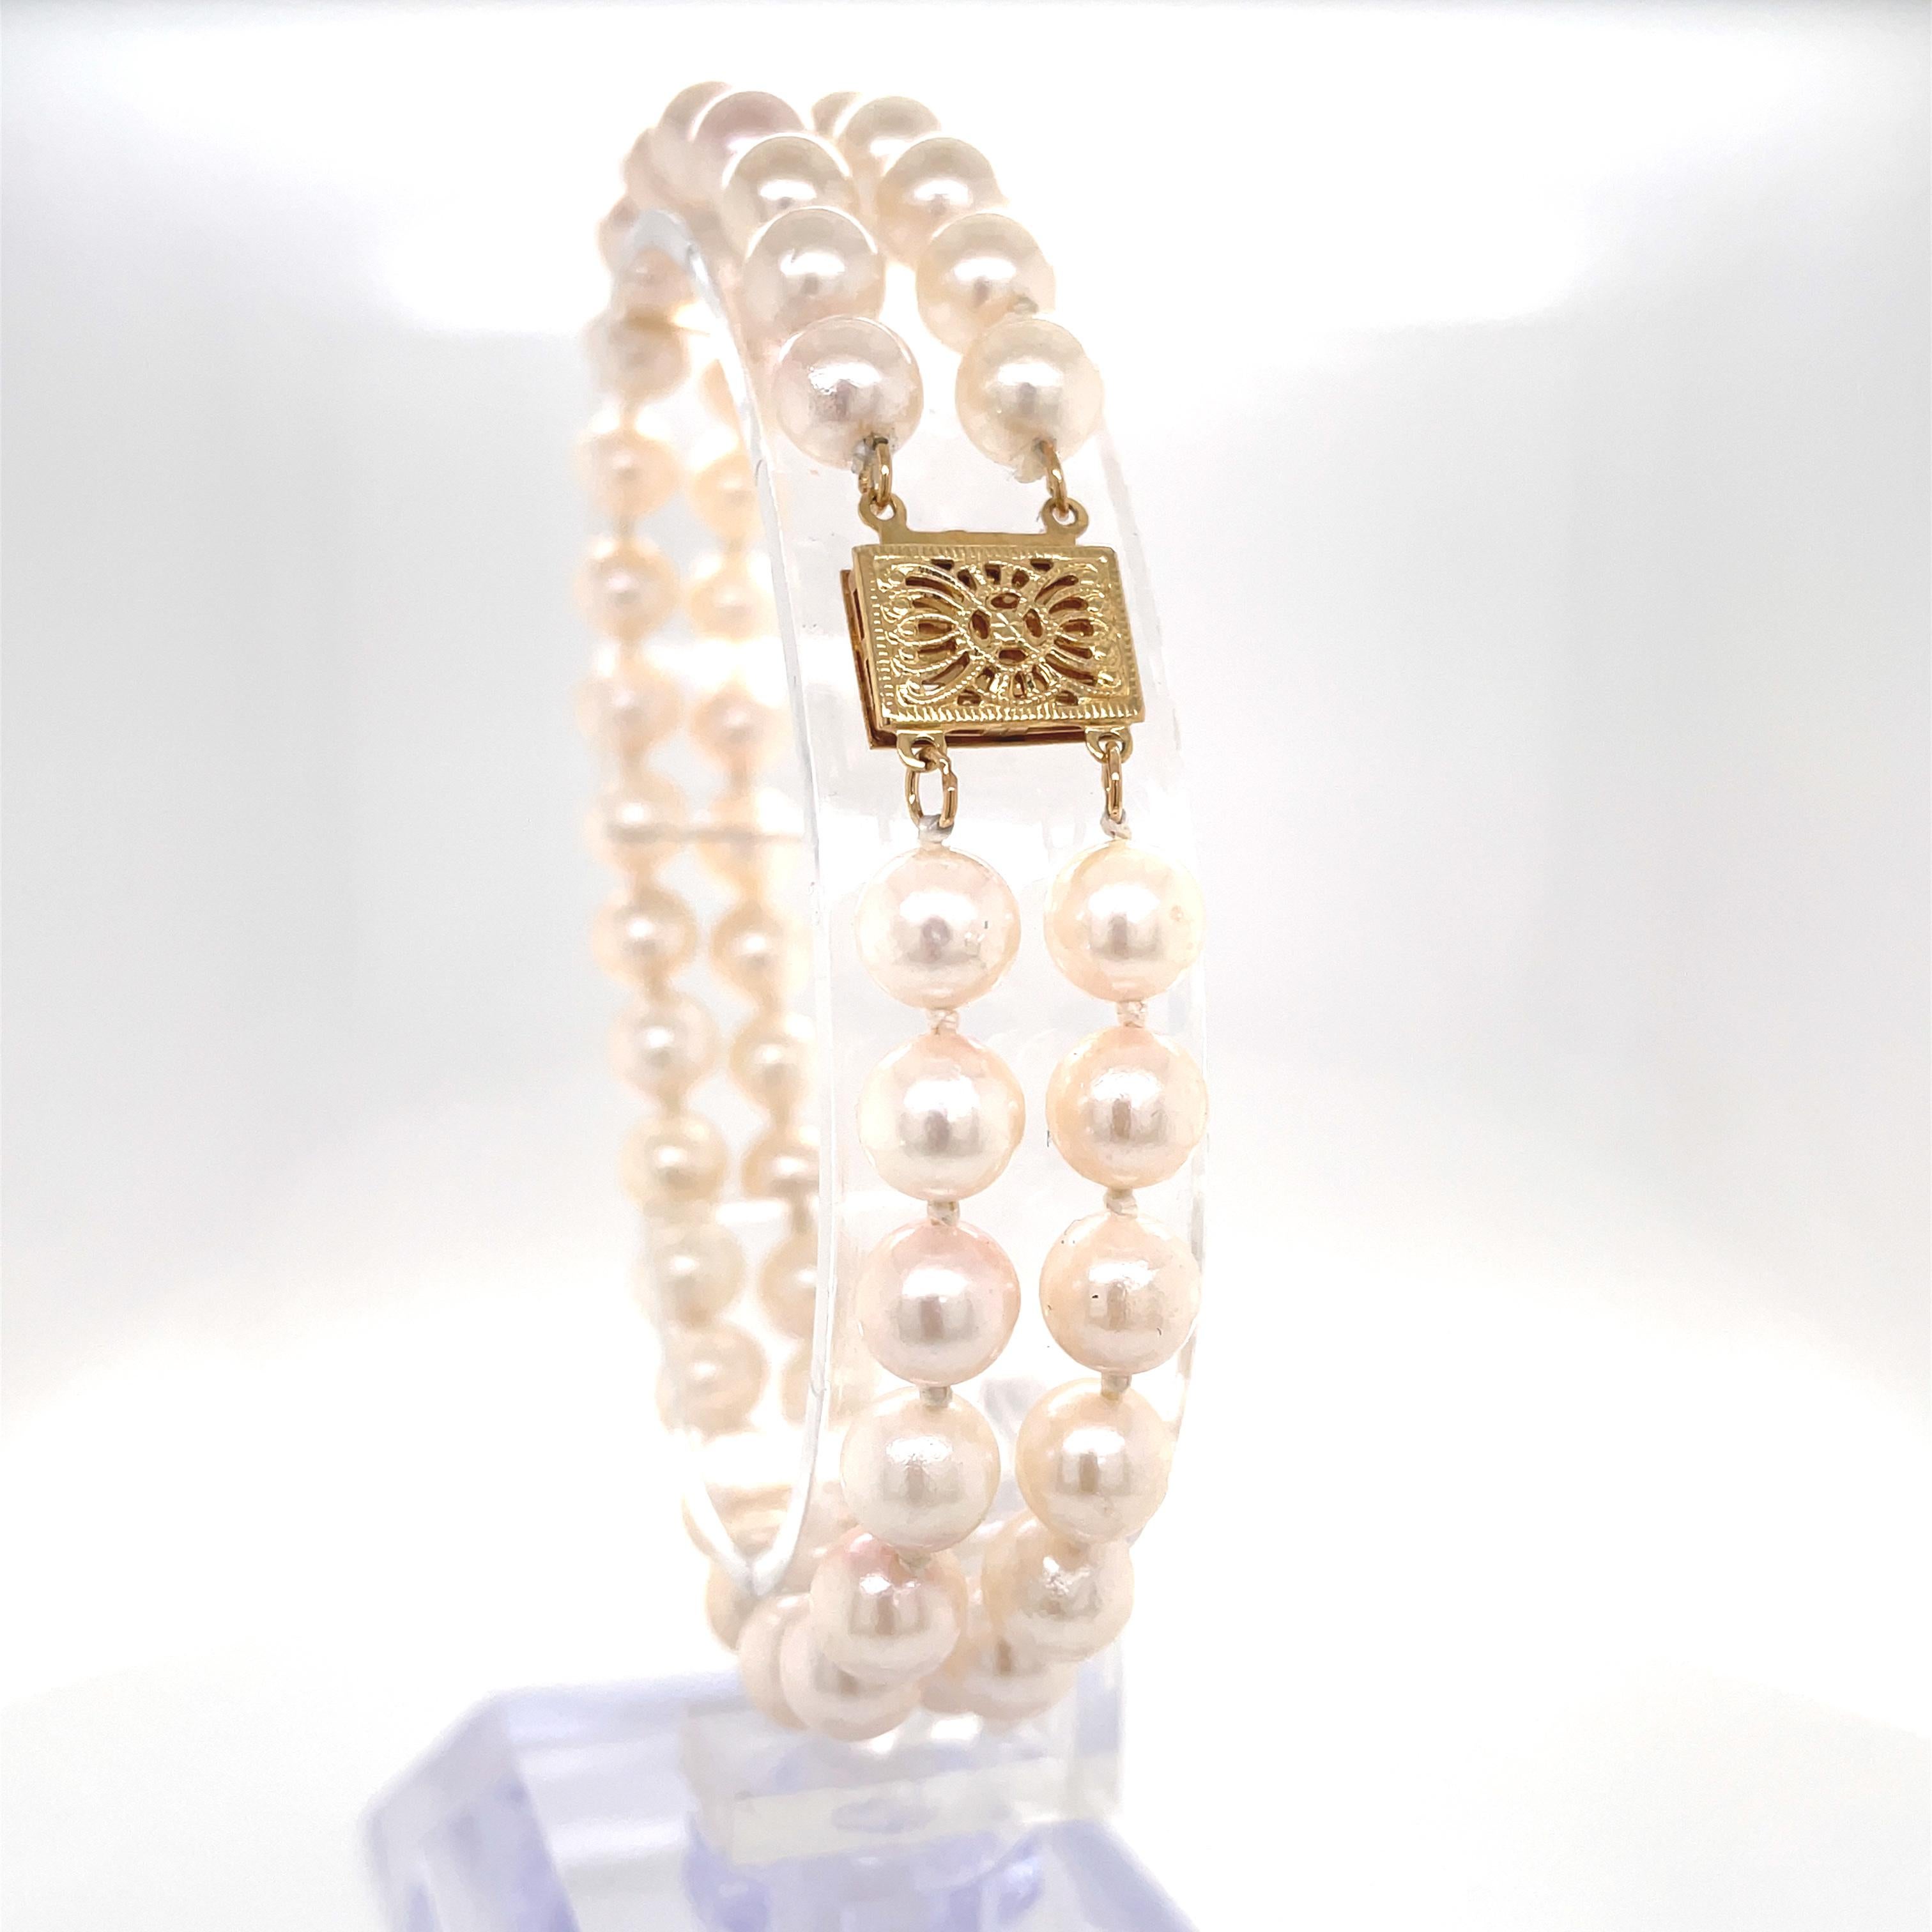 Dieses klassische, doppelreihige Armband aus cremeweißen Perlen ist mit einem dekorativen, filigranen Verschluss aus 14 Karat Gelbgold versehen und präsentiert einen frischen, modernen Lagenlook.
Glänzende Perlen mit einer Größe von ca. 5,8 mm - 5,9